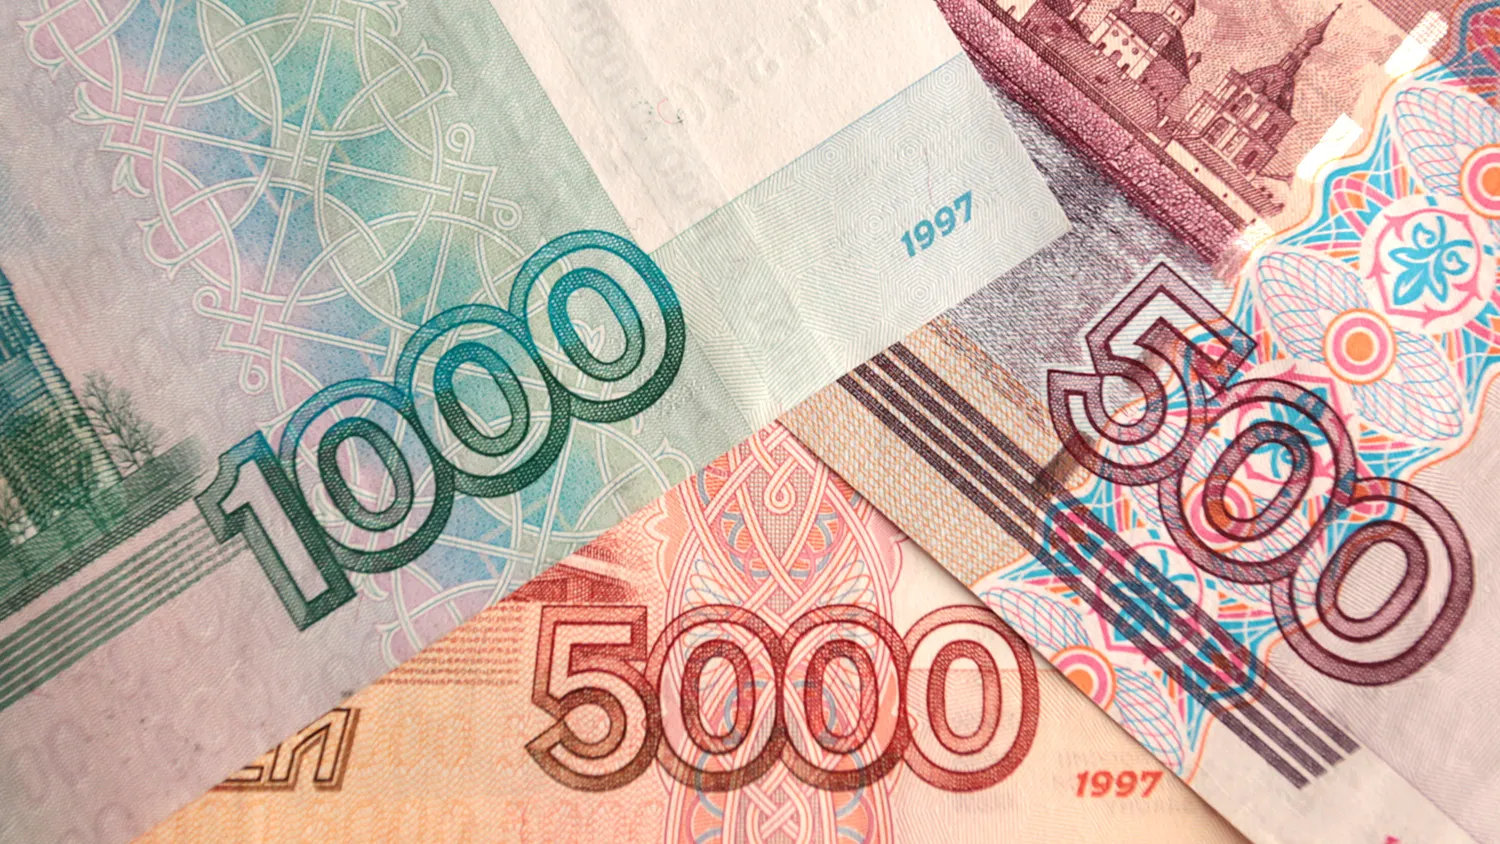 В 2015 году на российских купюрах появится графический знак рубля